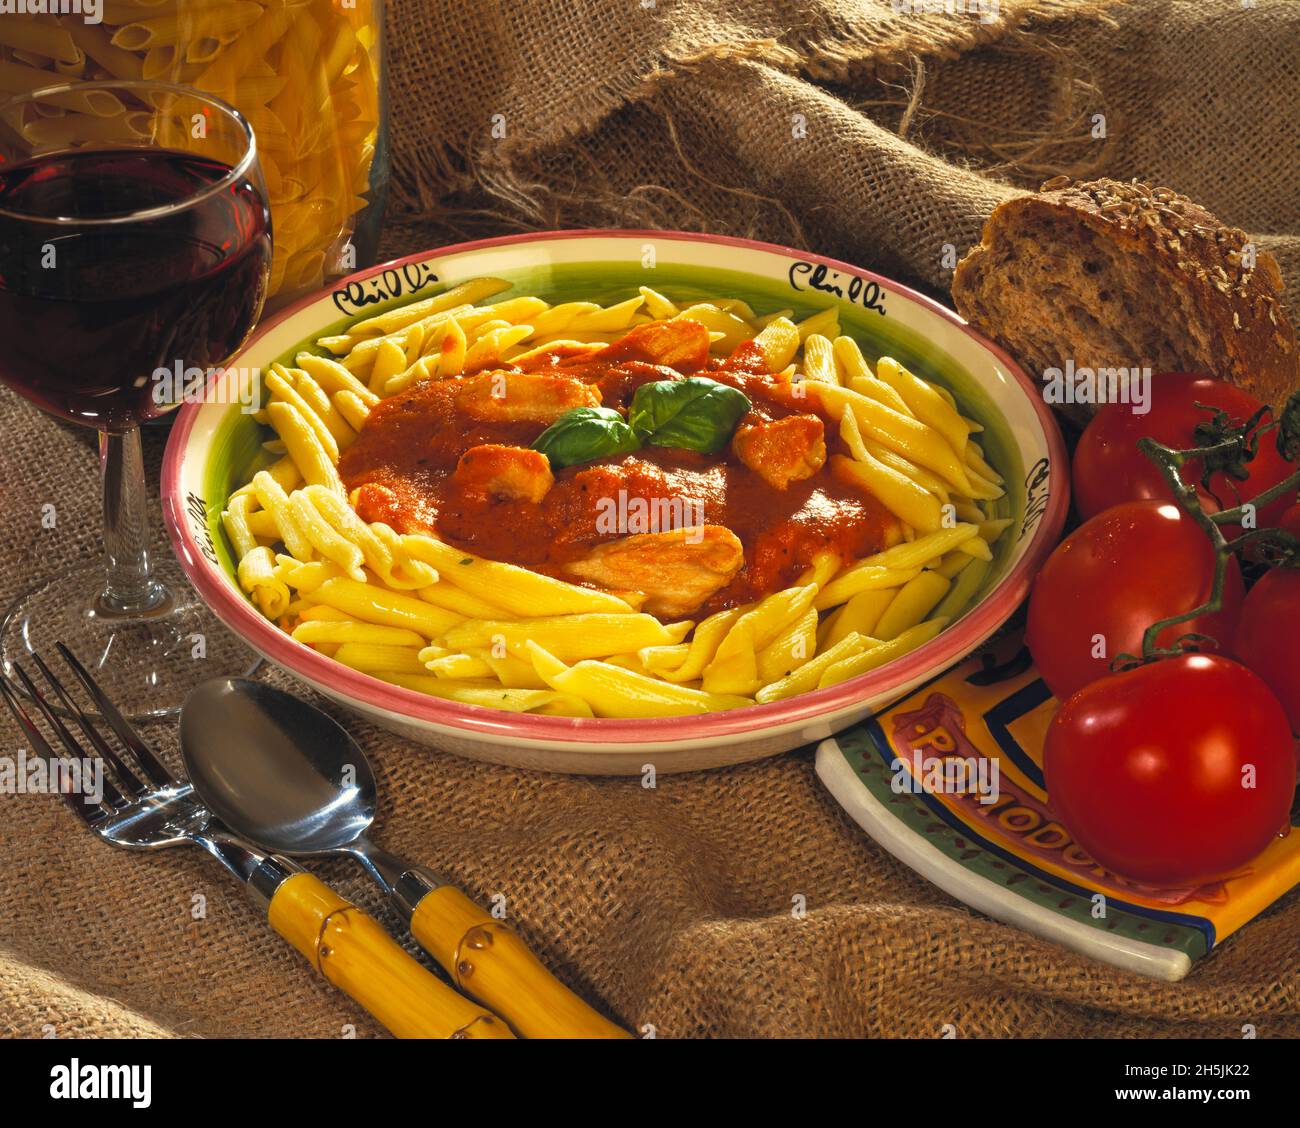 Huhn in einer Tomatensauce italienischen Stil mit gekochter Pasta Bambusgriff Gabel & Löffel Rotwein in Glas ganze Tomaten Getreidebrot hessischen Hintergrund Stockfoto